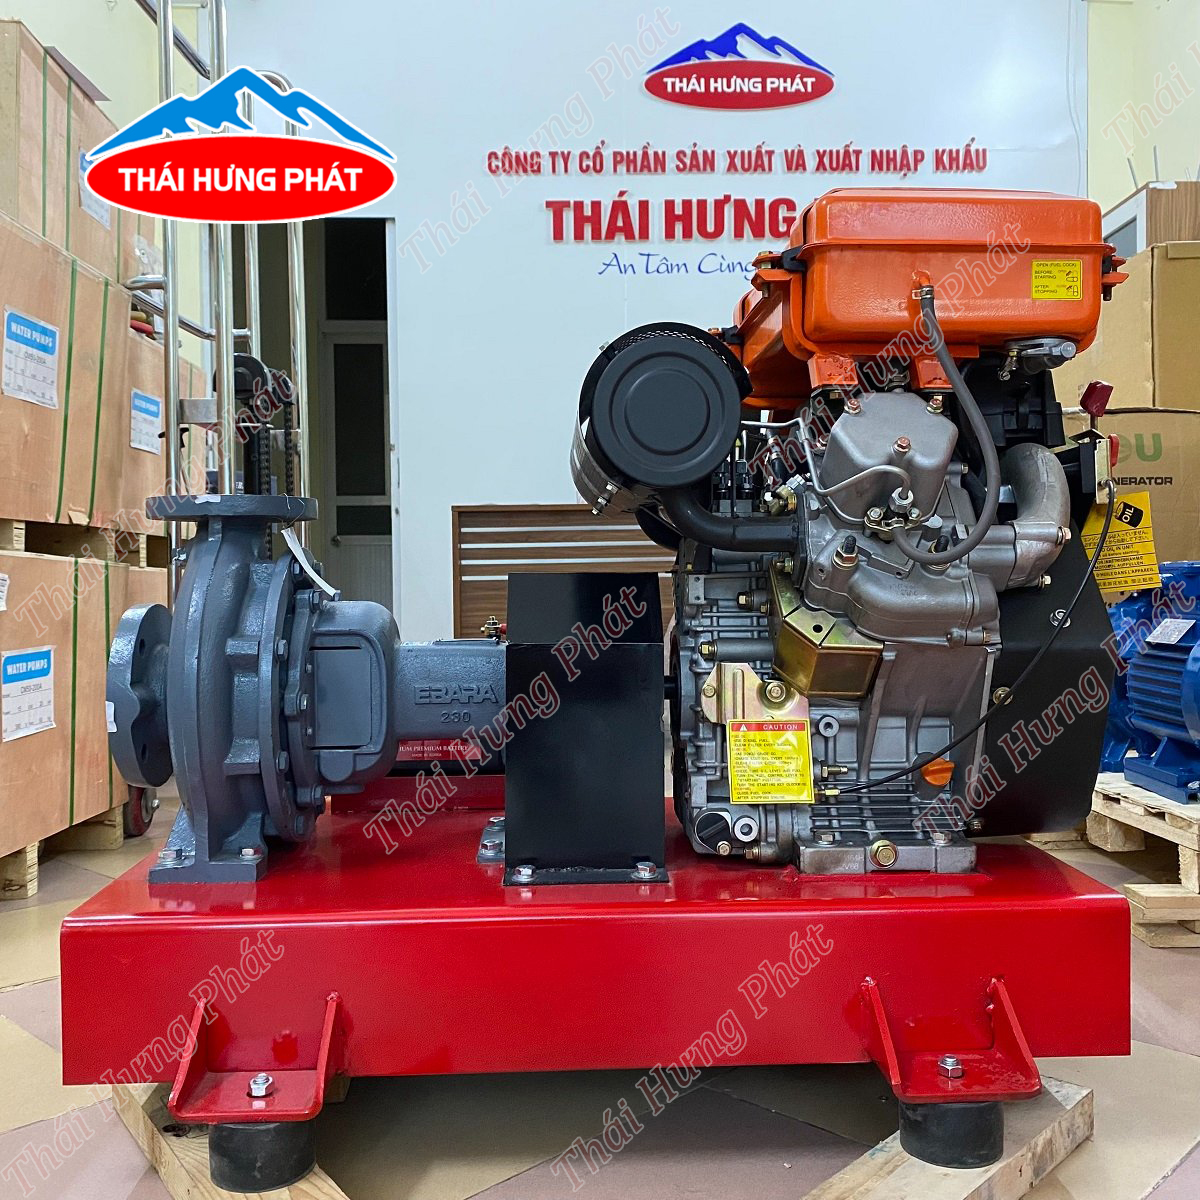  Mua máy bơm phòng cháy chữa cháy chất lượng, giá rẻ tại tỉnh Bình Thuận